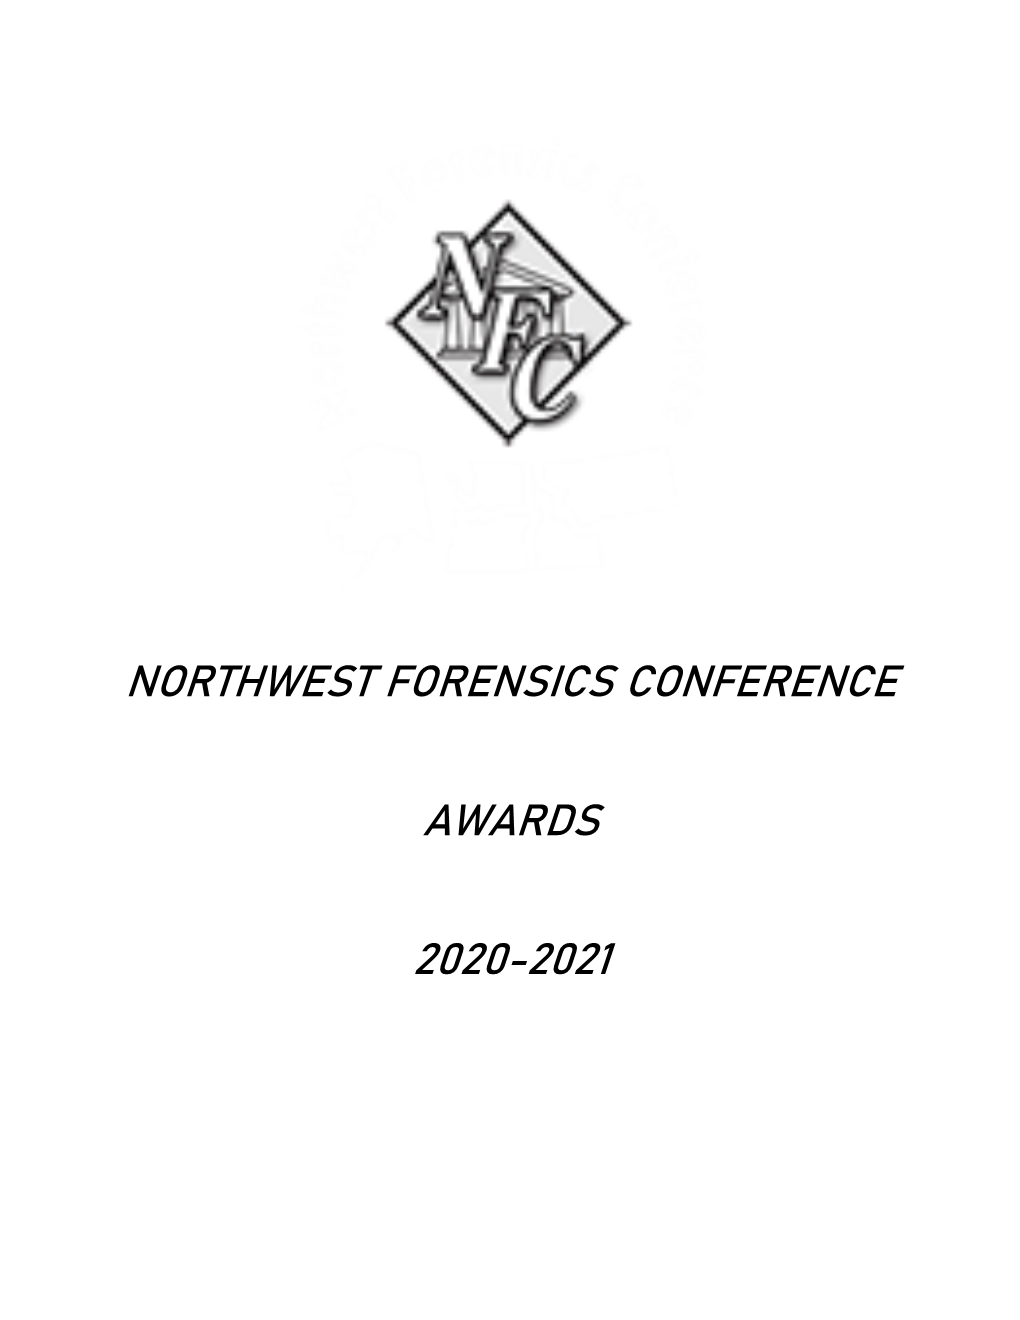 NFC Awards 2020-2021